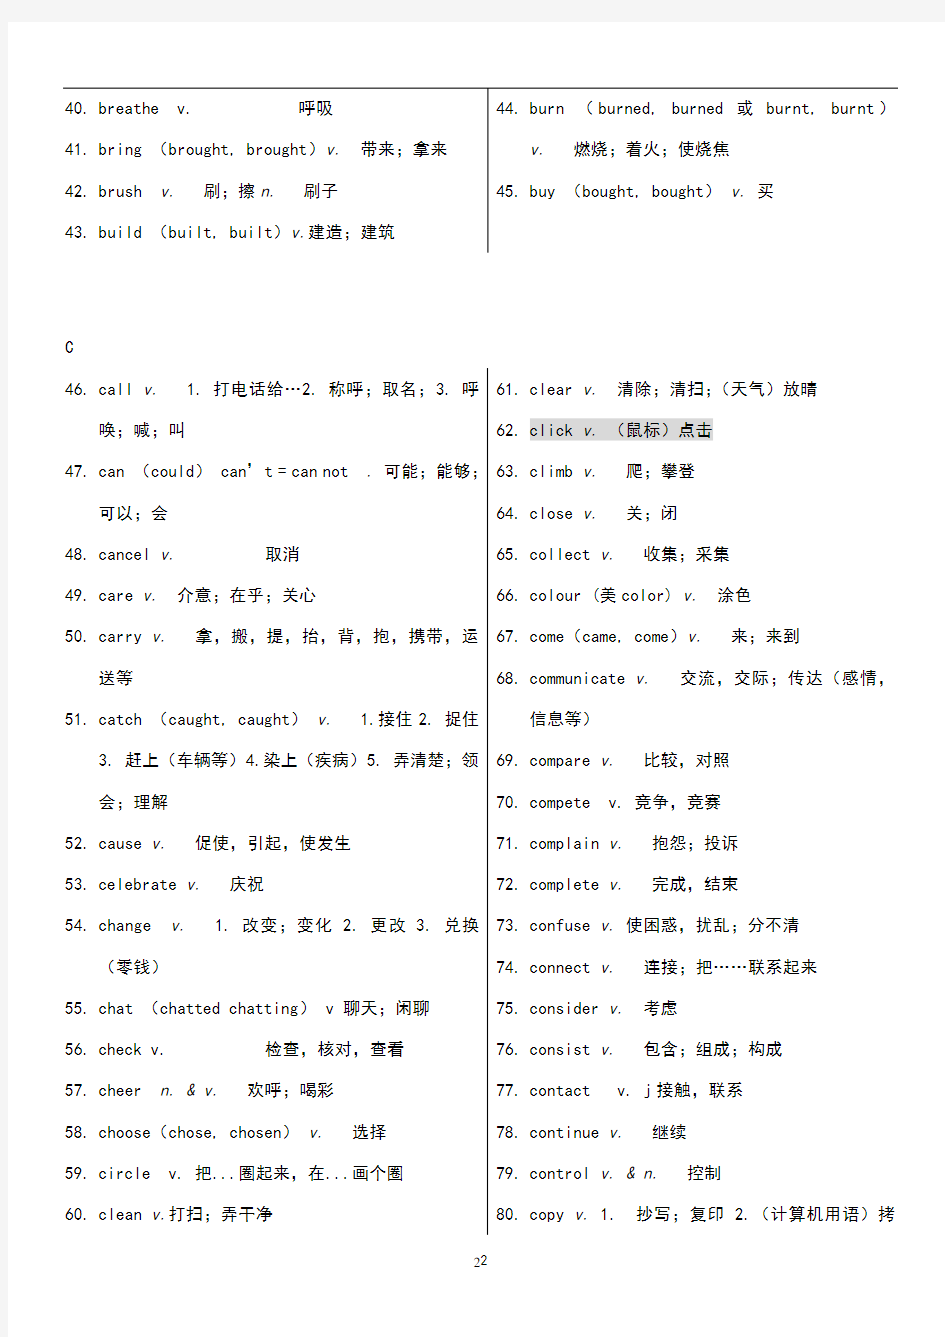 2020年上海中考英语考纲词汇分类表